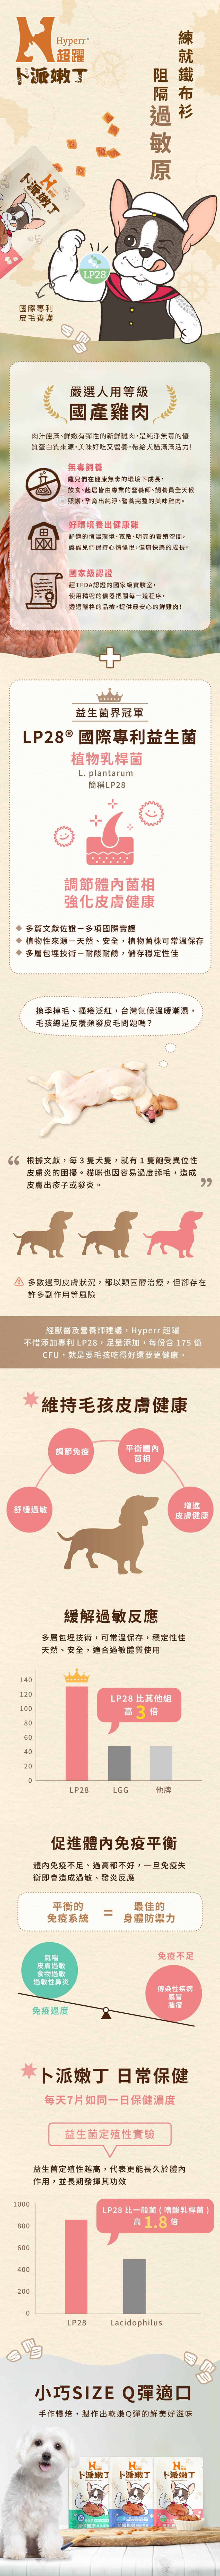 Hyperr超躍 狗狗保健機能嫩丁零食 商品說明頁